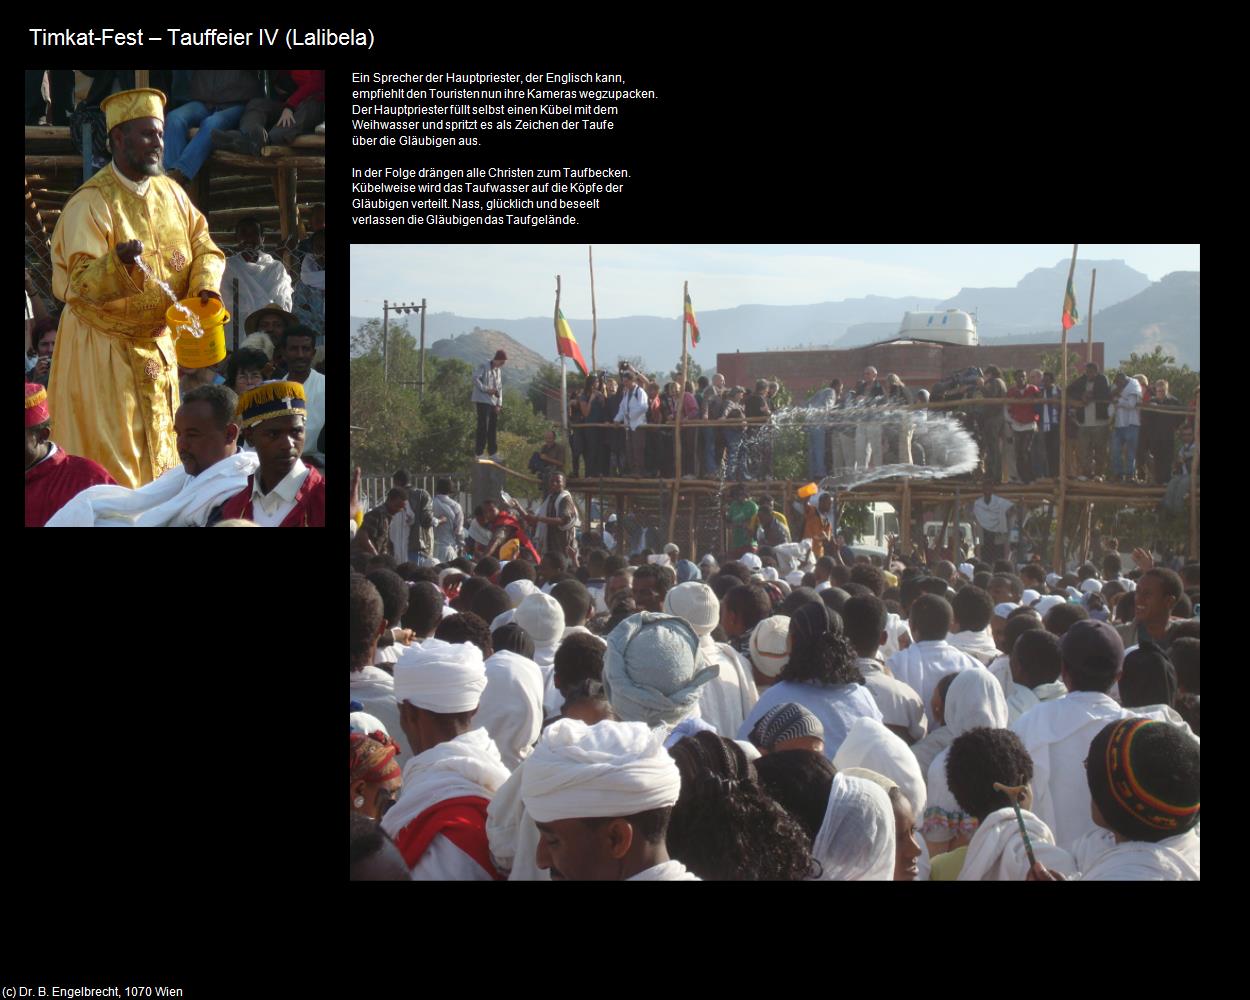 Tauffeier IV (Timkat-Fest) in Äthiopien